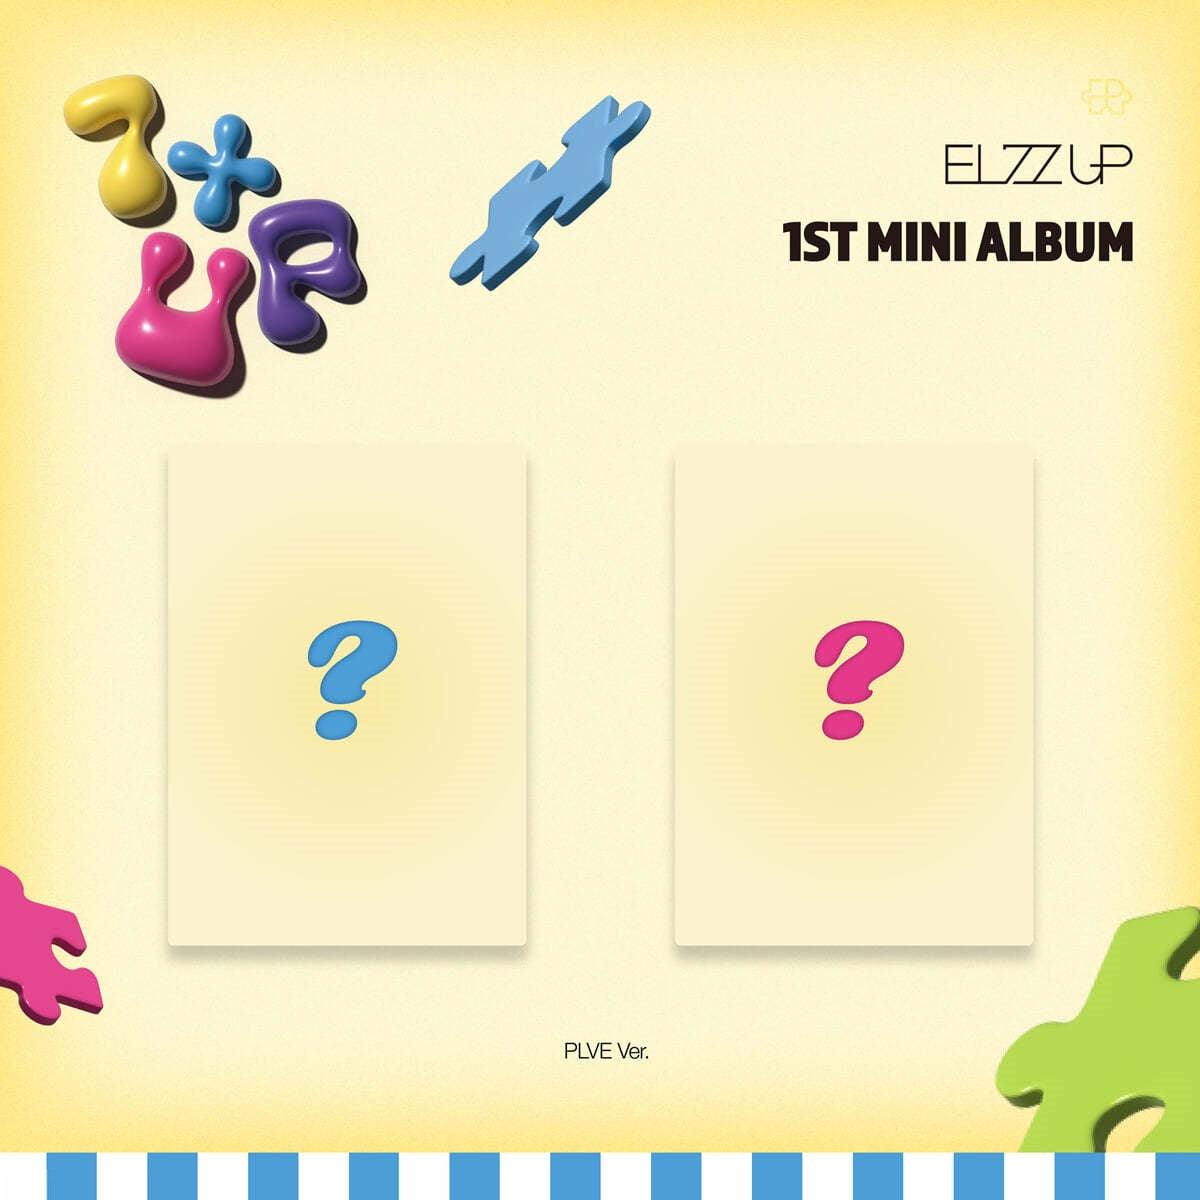 VIVIZ 4th Mini Album - VERSUS (PLVE Ver.) – Choice Music LA